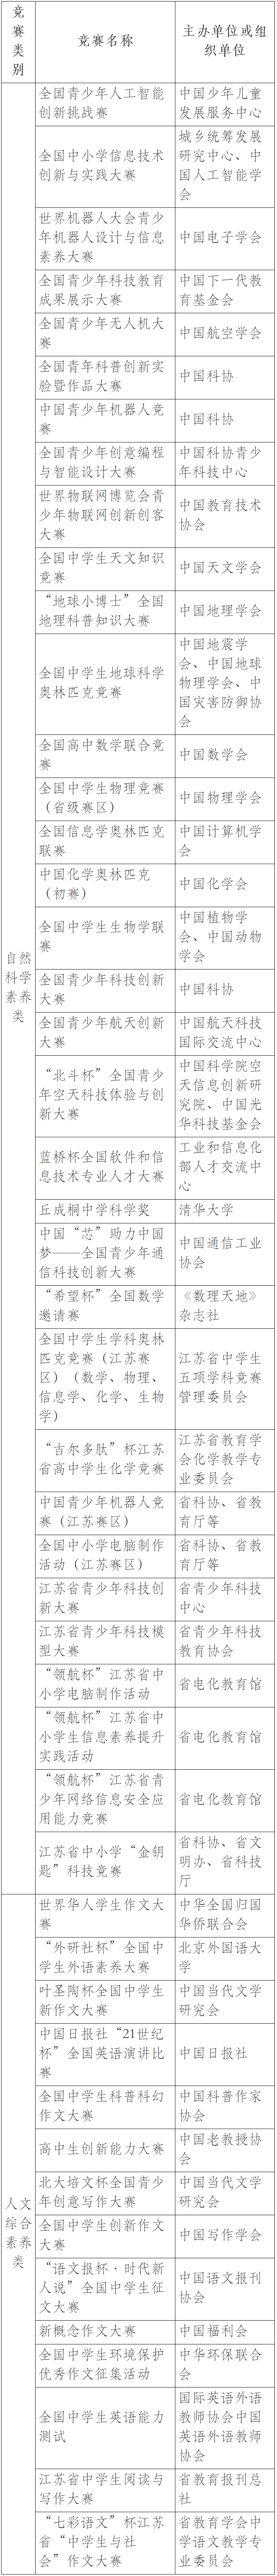 2023南京邮电大学综合评价竞赛名单